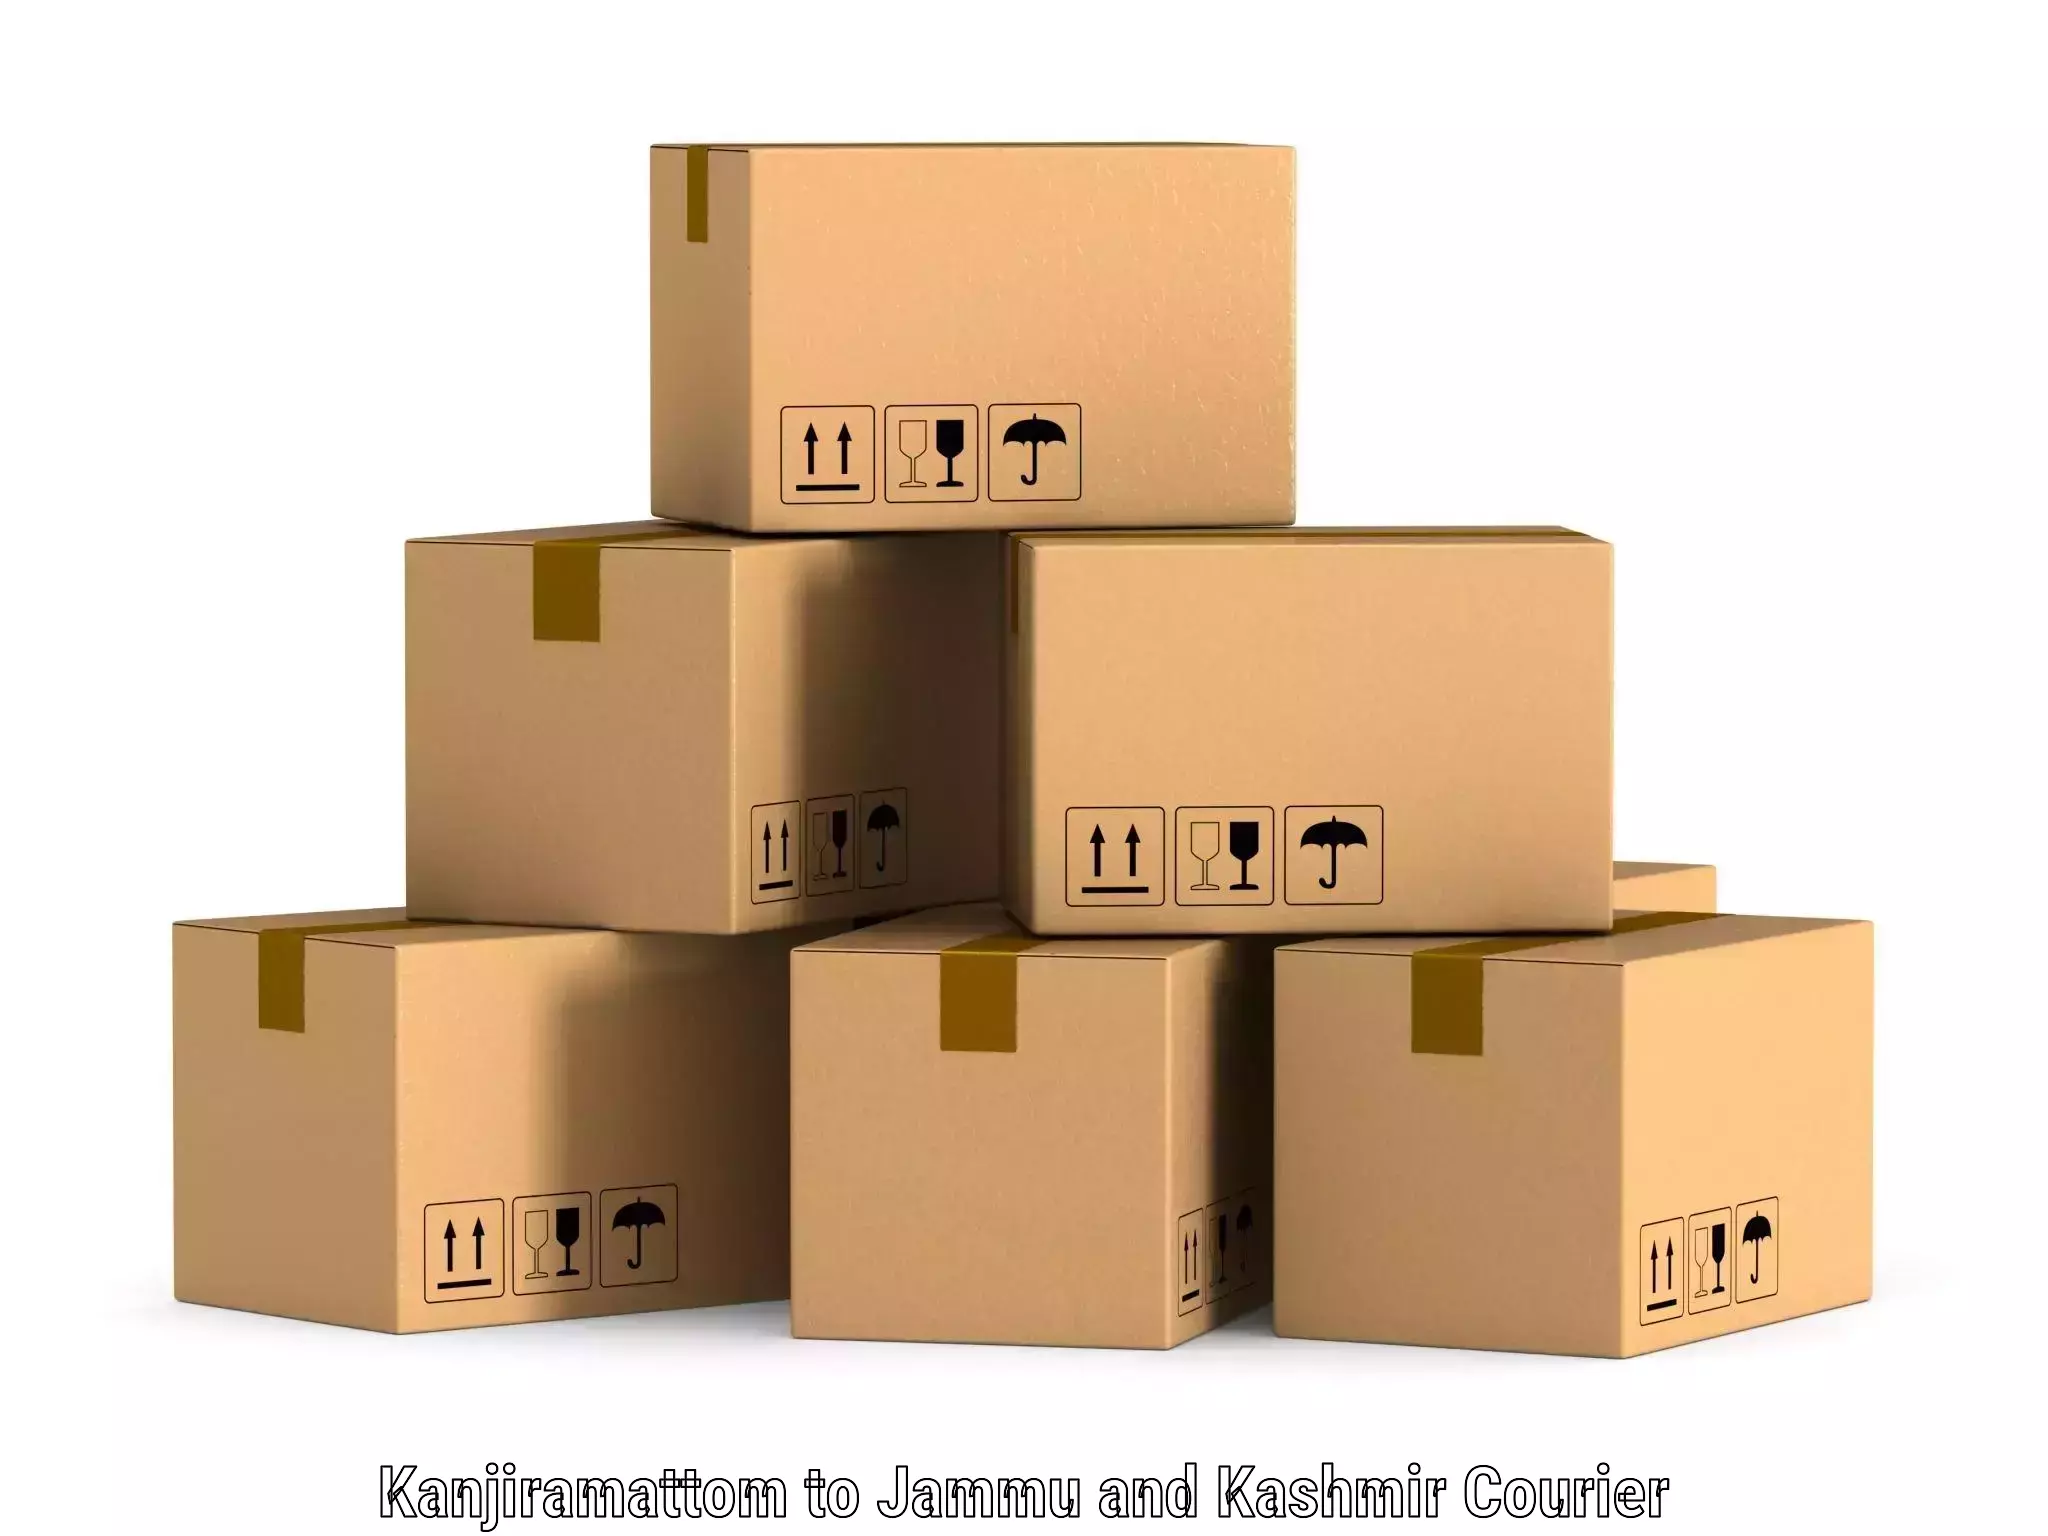 Customer-centric shipping Kanjiramattom to Bandipur